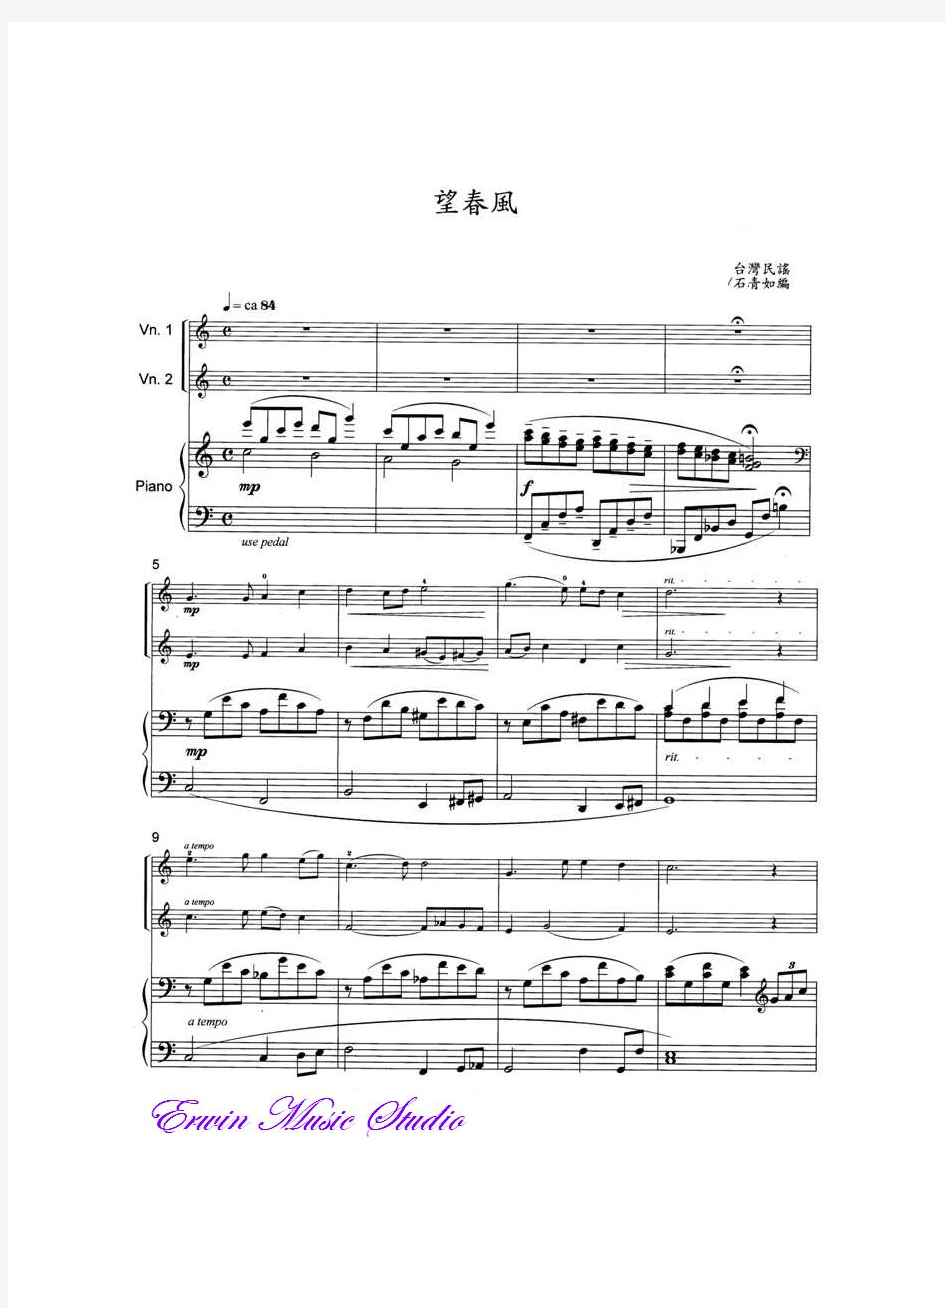 台湾民谣 《望春风》小提琴二重奏曲谱